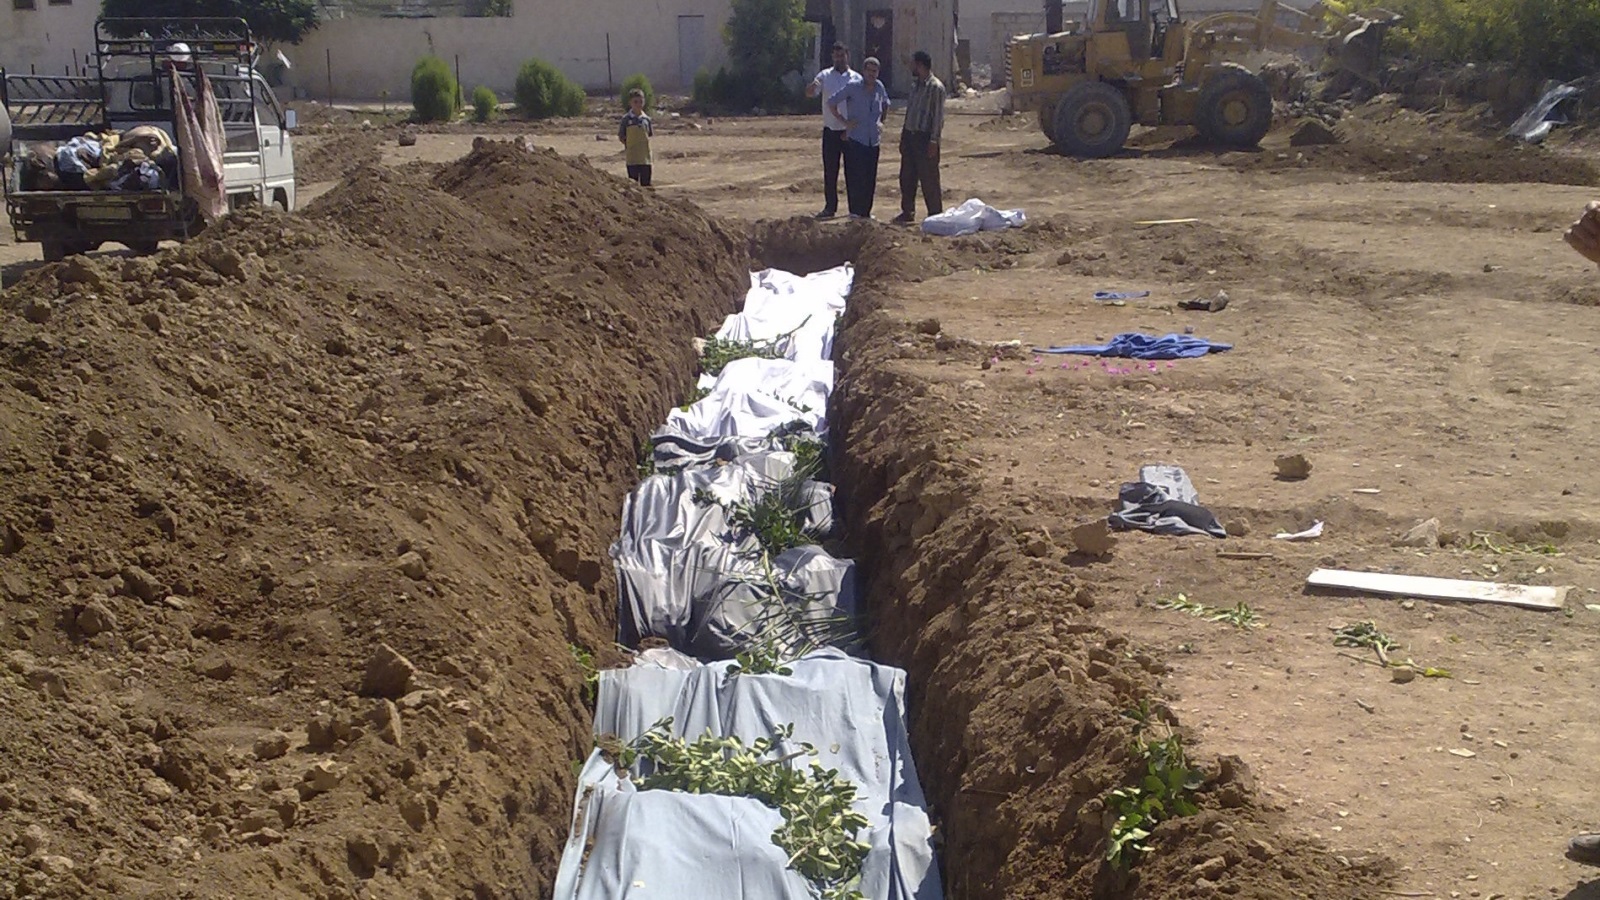 في اليوم التالي للمجزرة، سمح جيش النظام لأهل داريا بدفن القتلى، ودفنوا بمقابر جماعية، وخسر كل منزل شهيدًا أو مصابًا أو معتقلًا أو مفقودًا